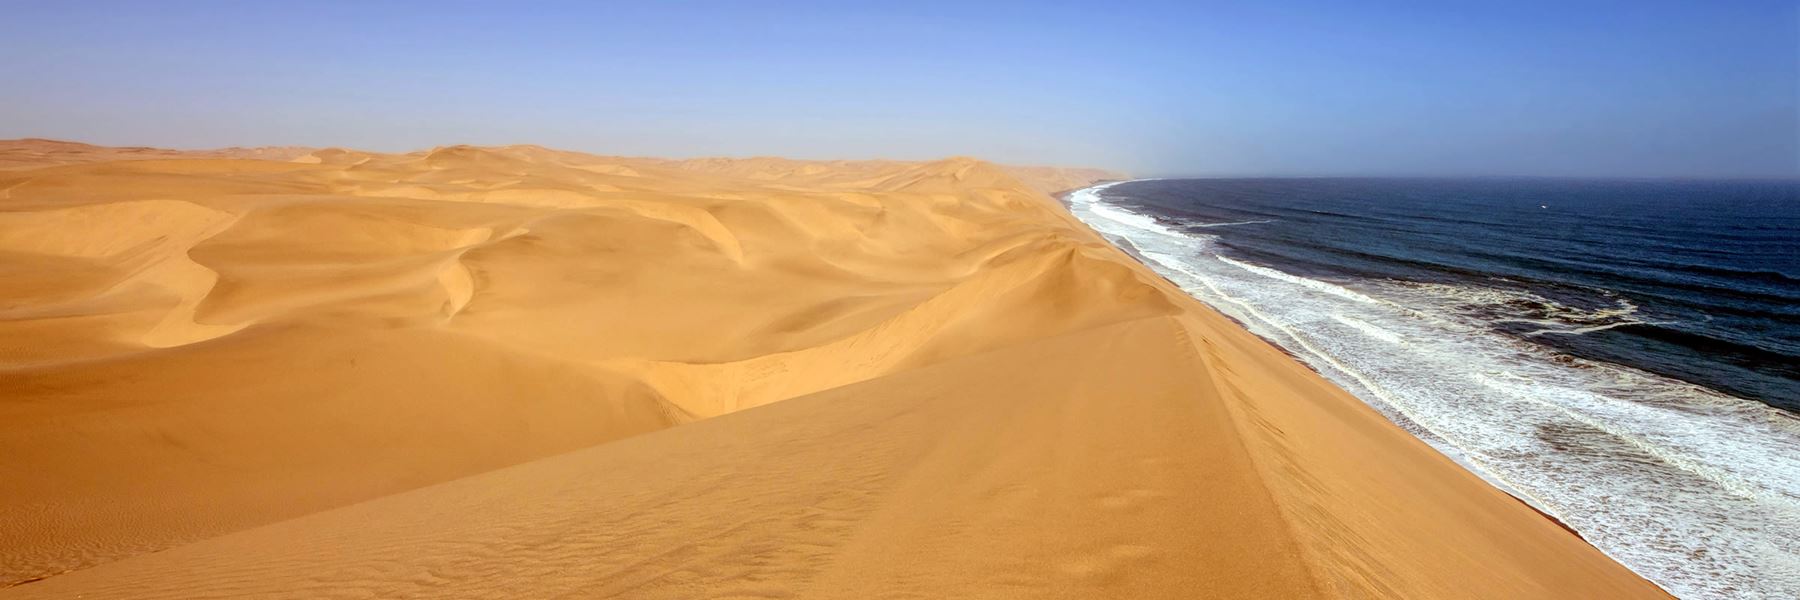 Skeleton Coast in Namibia